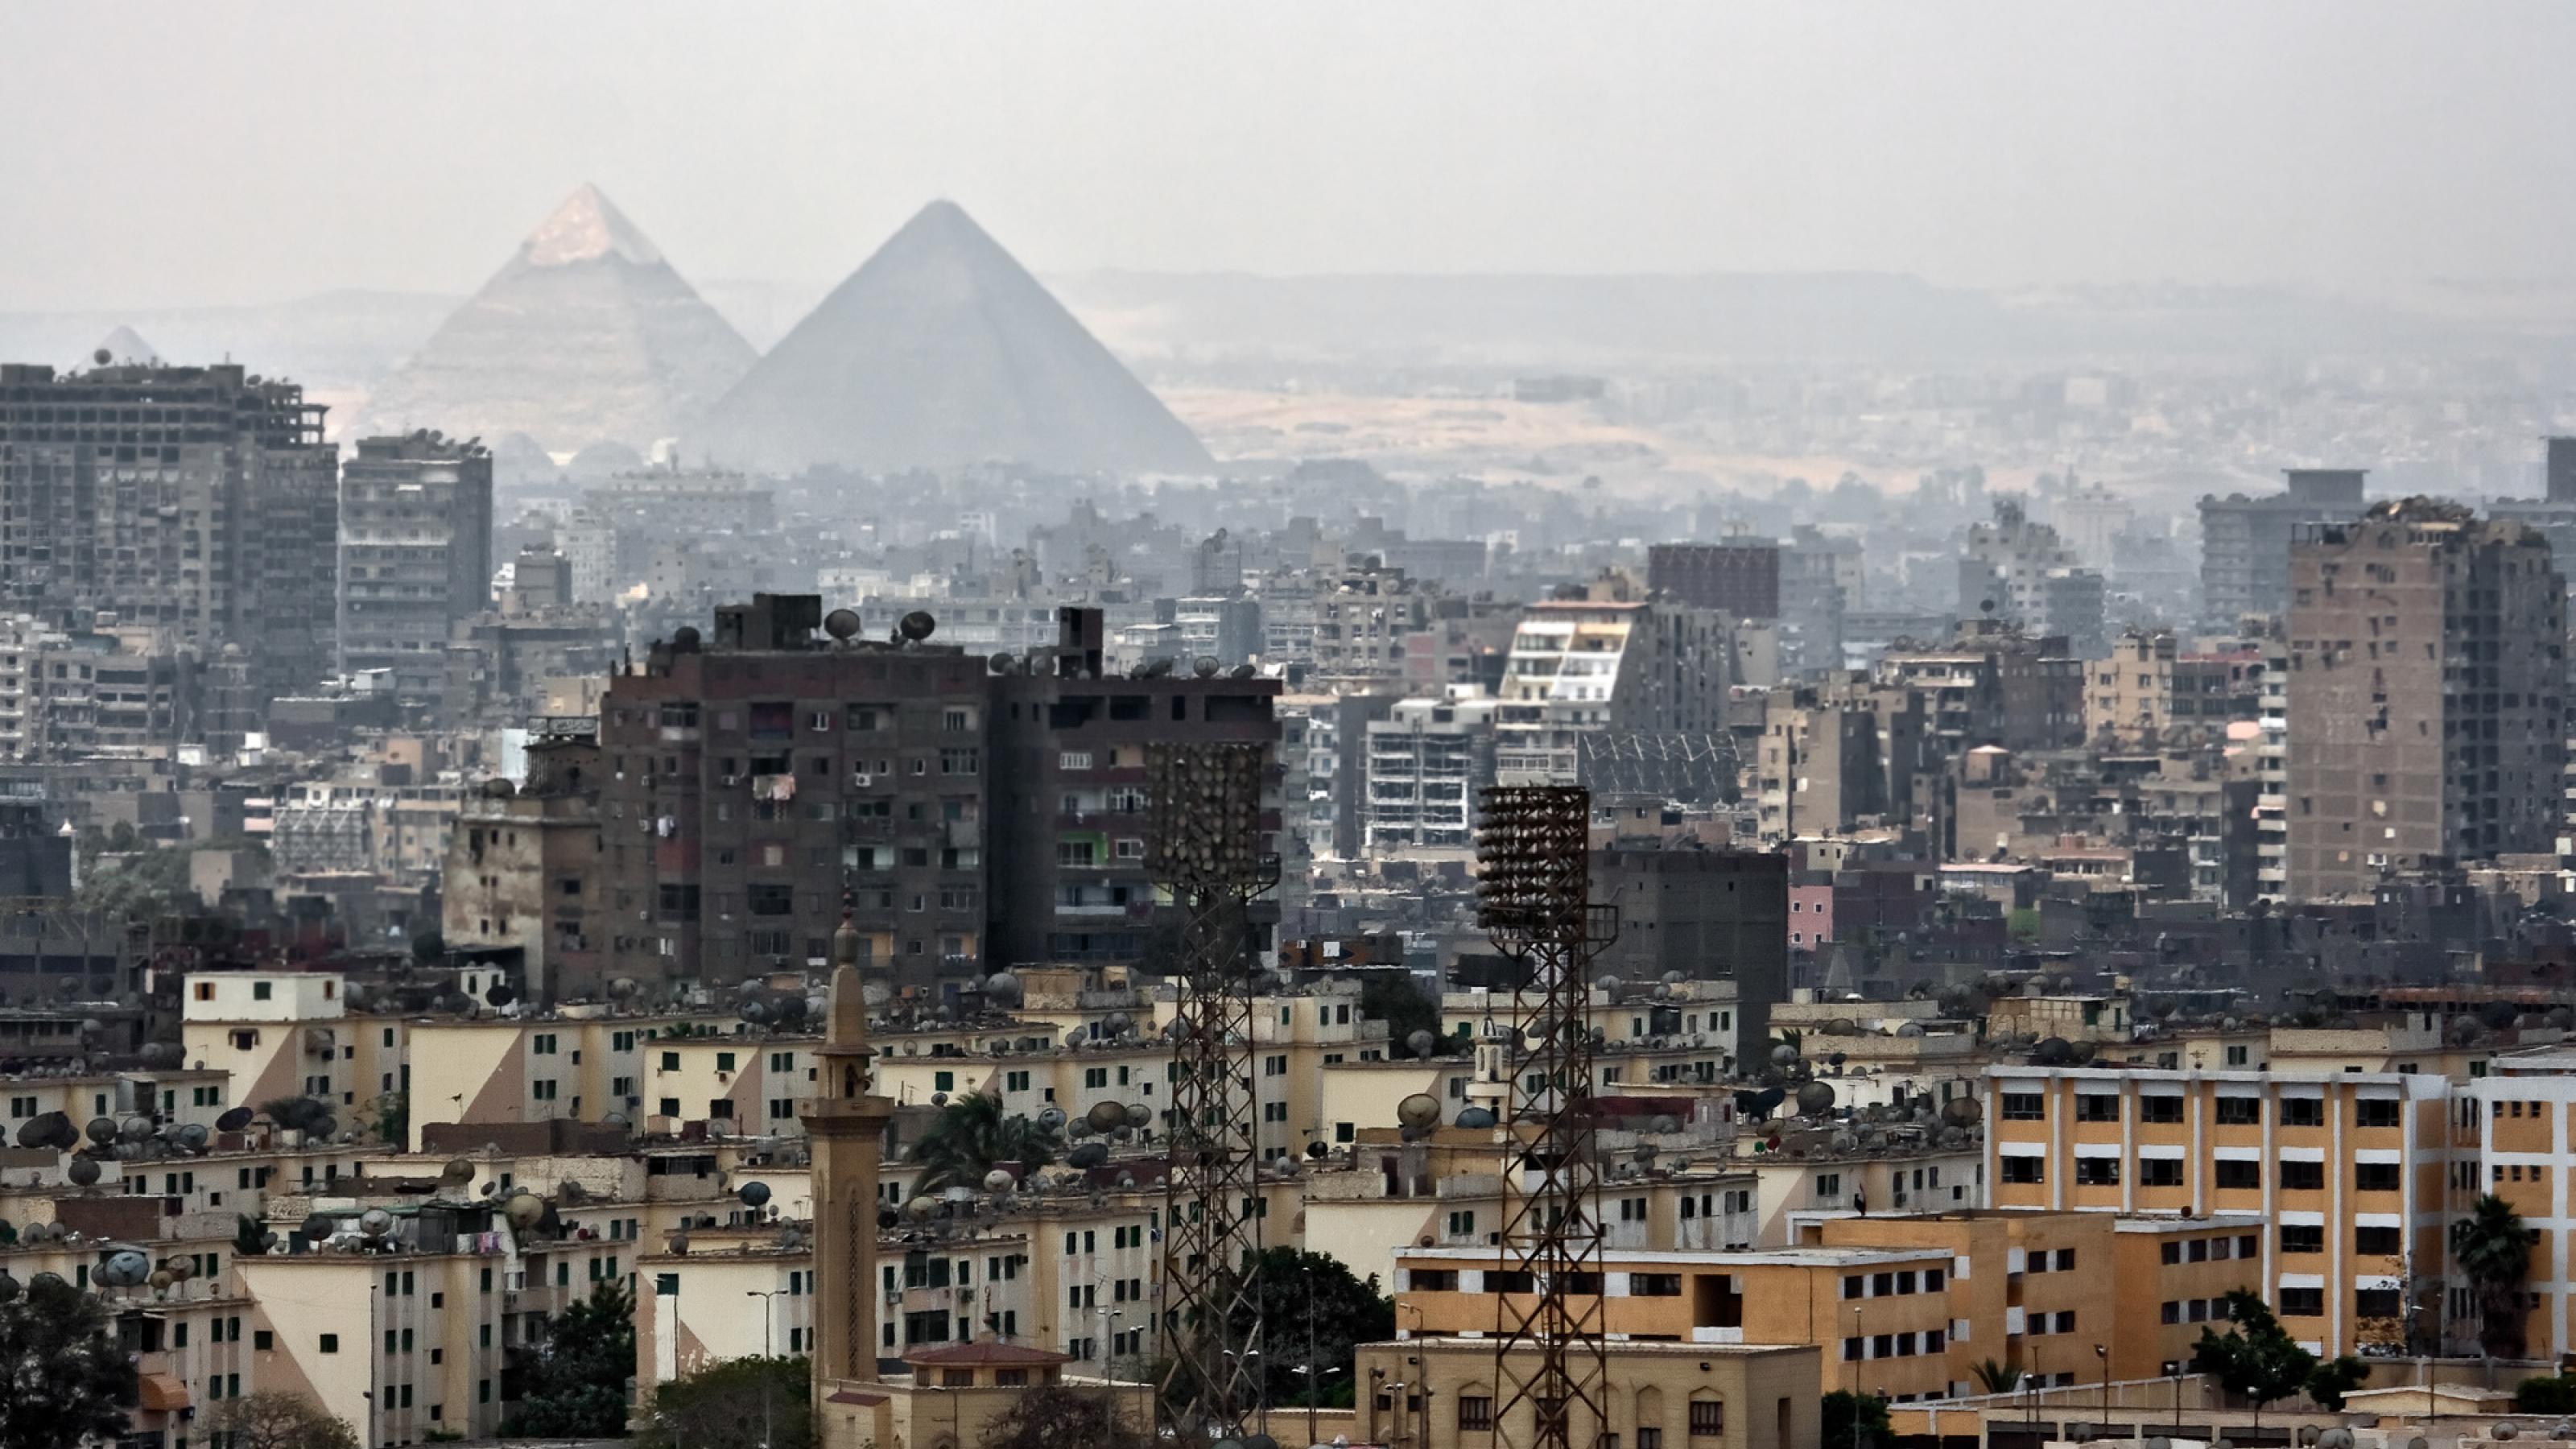 Das Symbolbild zeigt die Skyline von Kairo – im Vordergrund Wohnblocks, im Hintergrund Pyramiden.